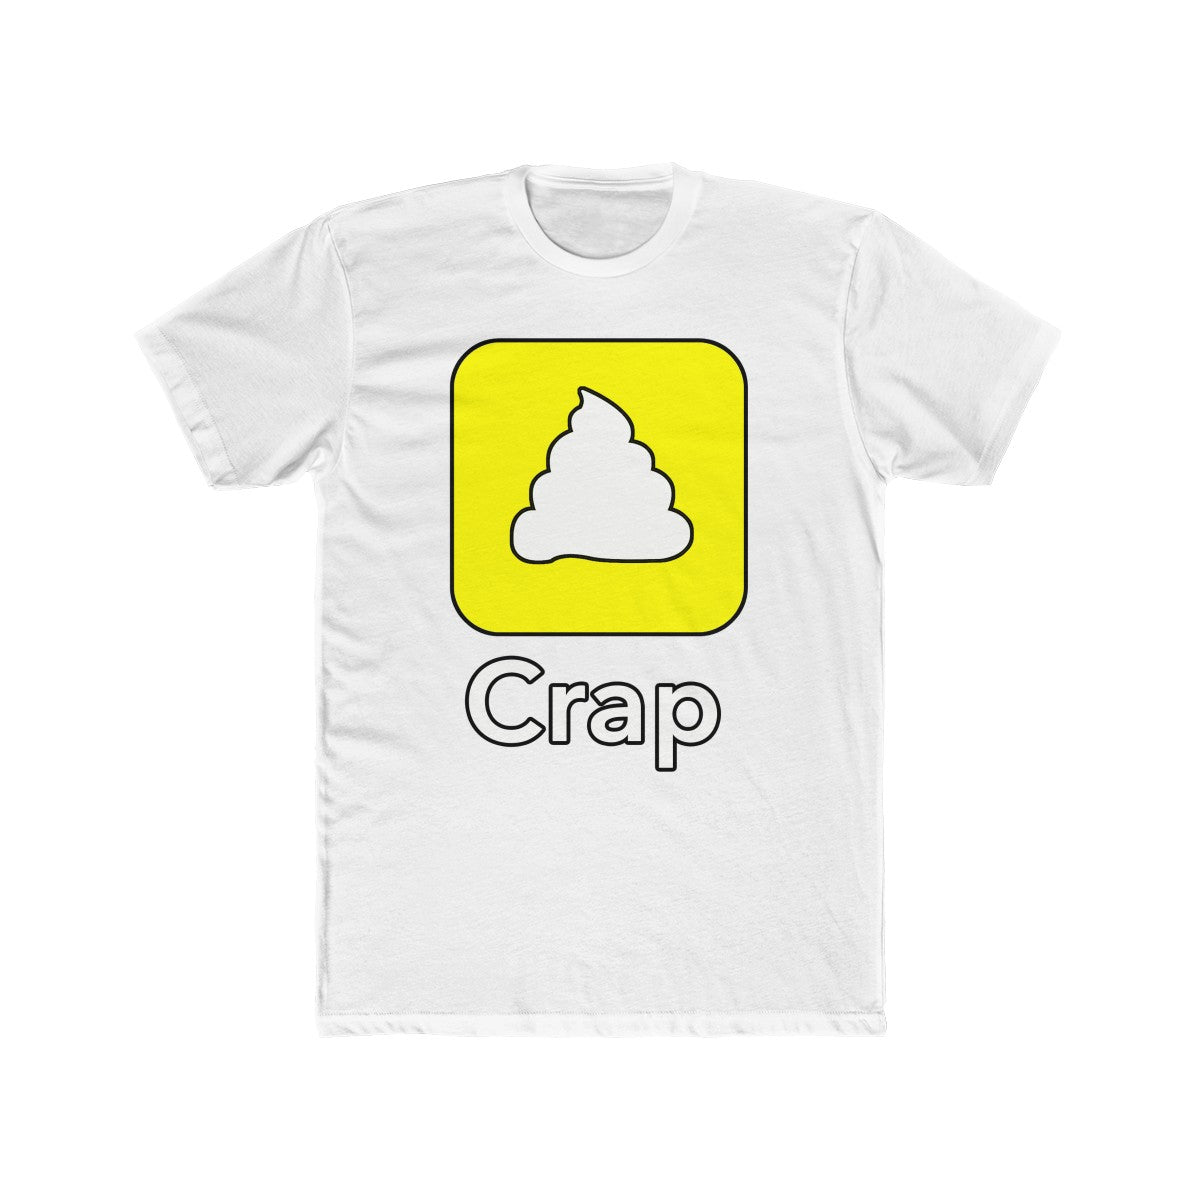 Crap Snapchat Logo Tee